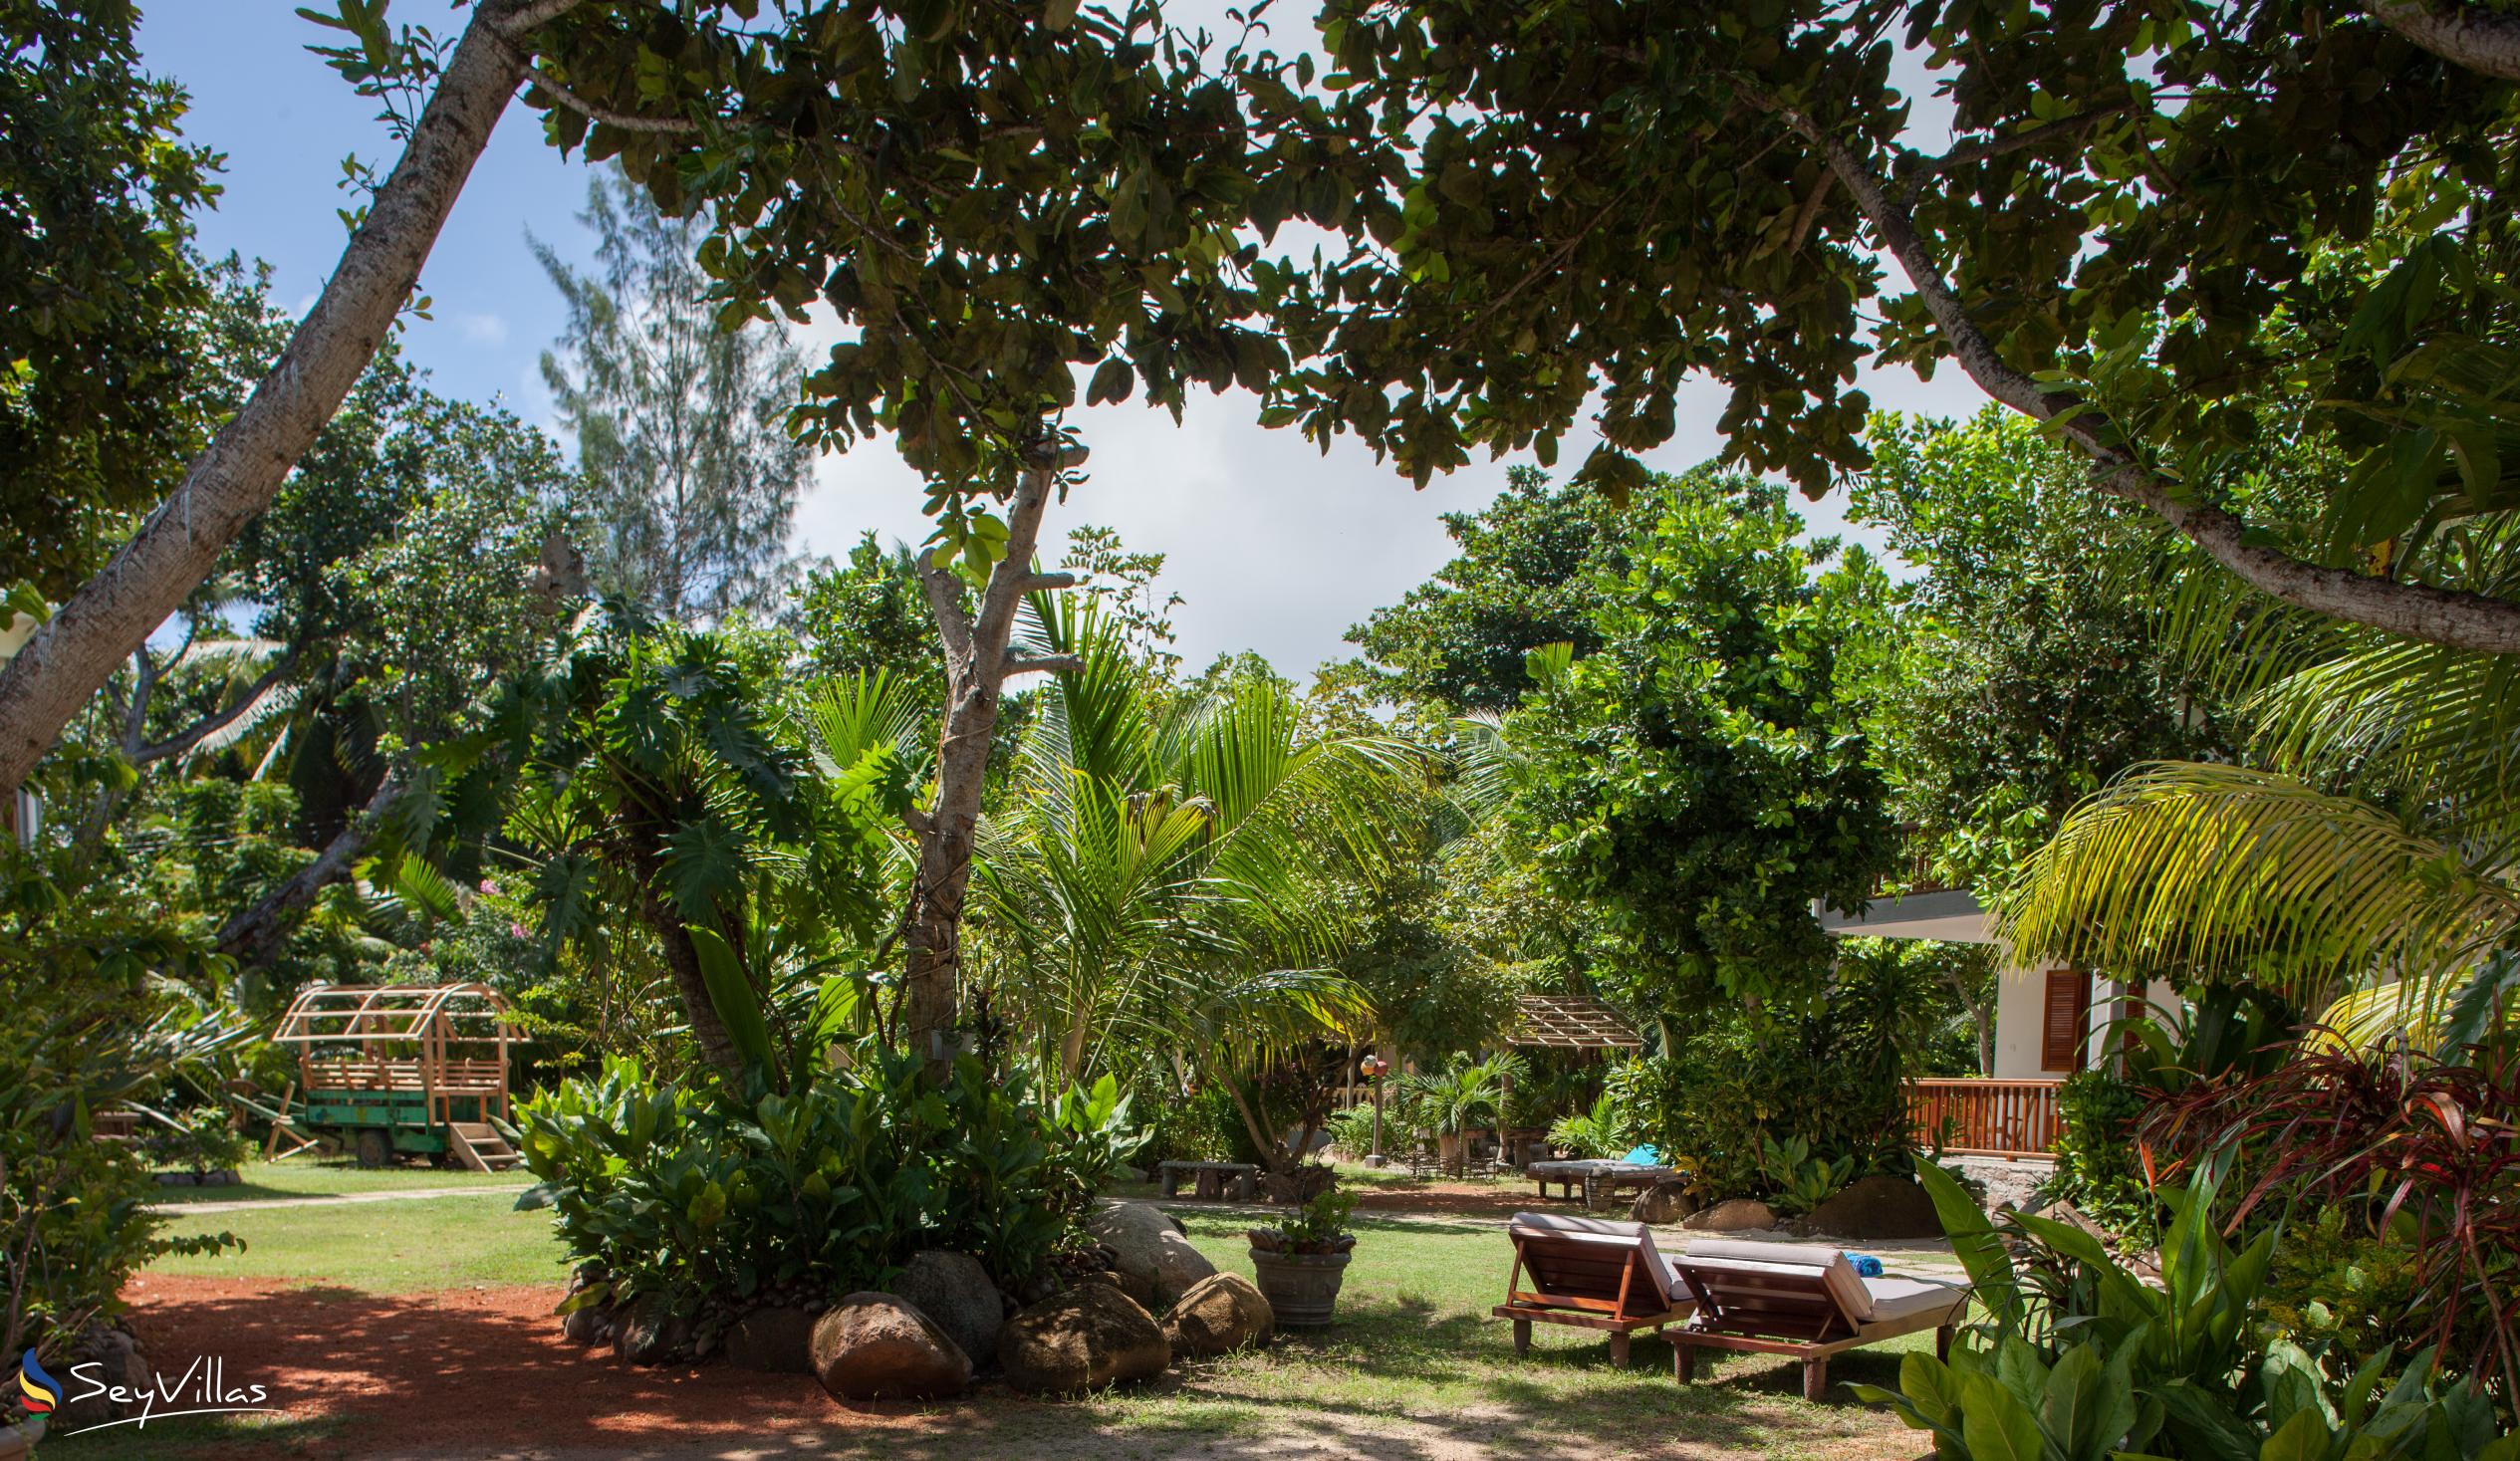 Foto 19: Domaine Les Rochers - Aussenbereich - La Digue (Seychellen)